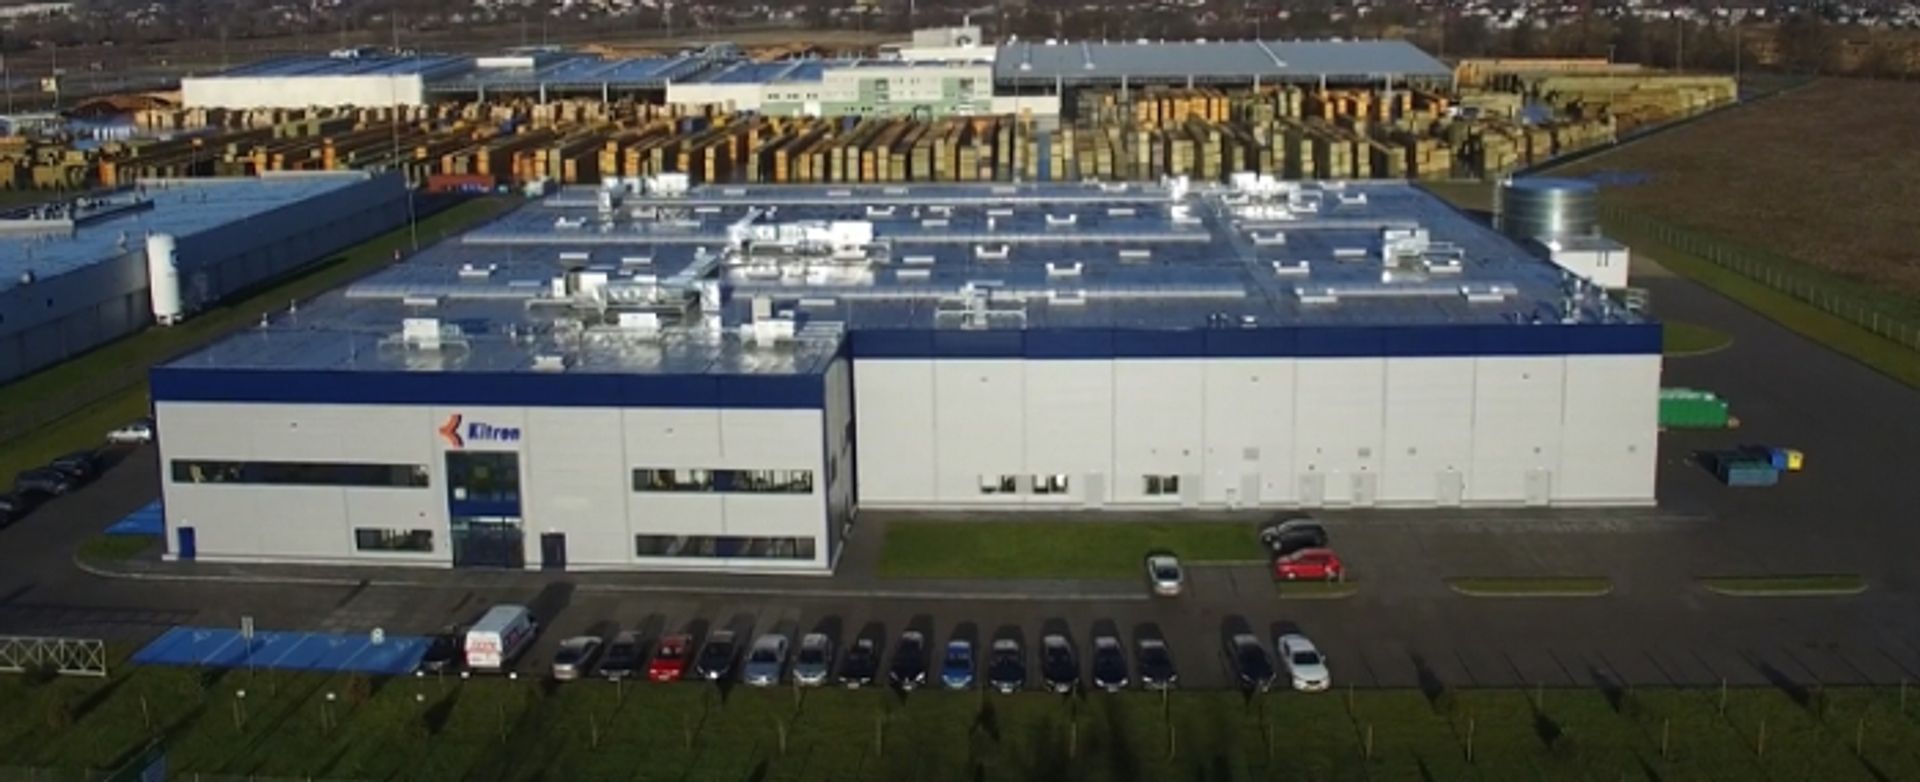 Norweski producent elektroniki Kitron wybuduje nowy zakład produkcyjny w Grudziądzu